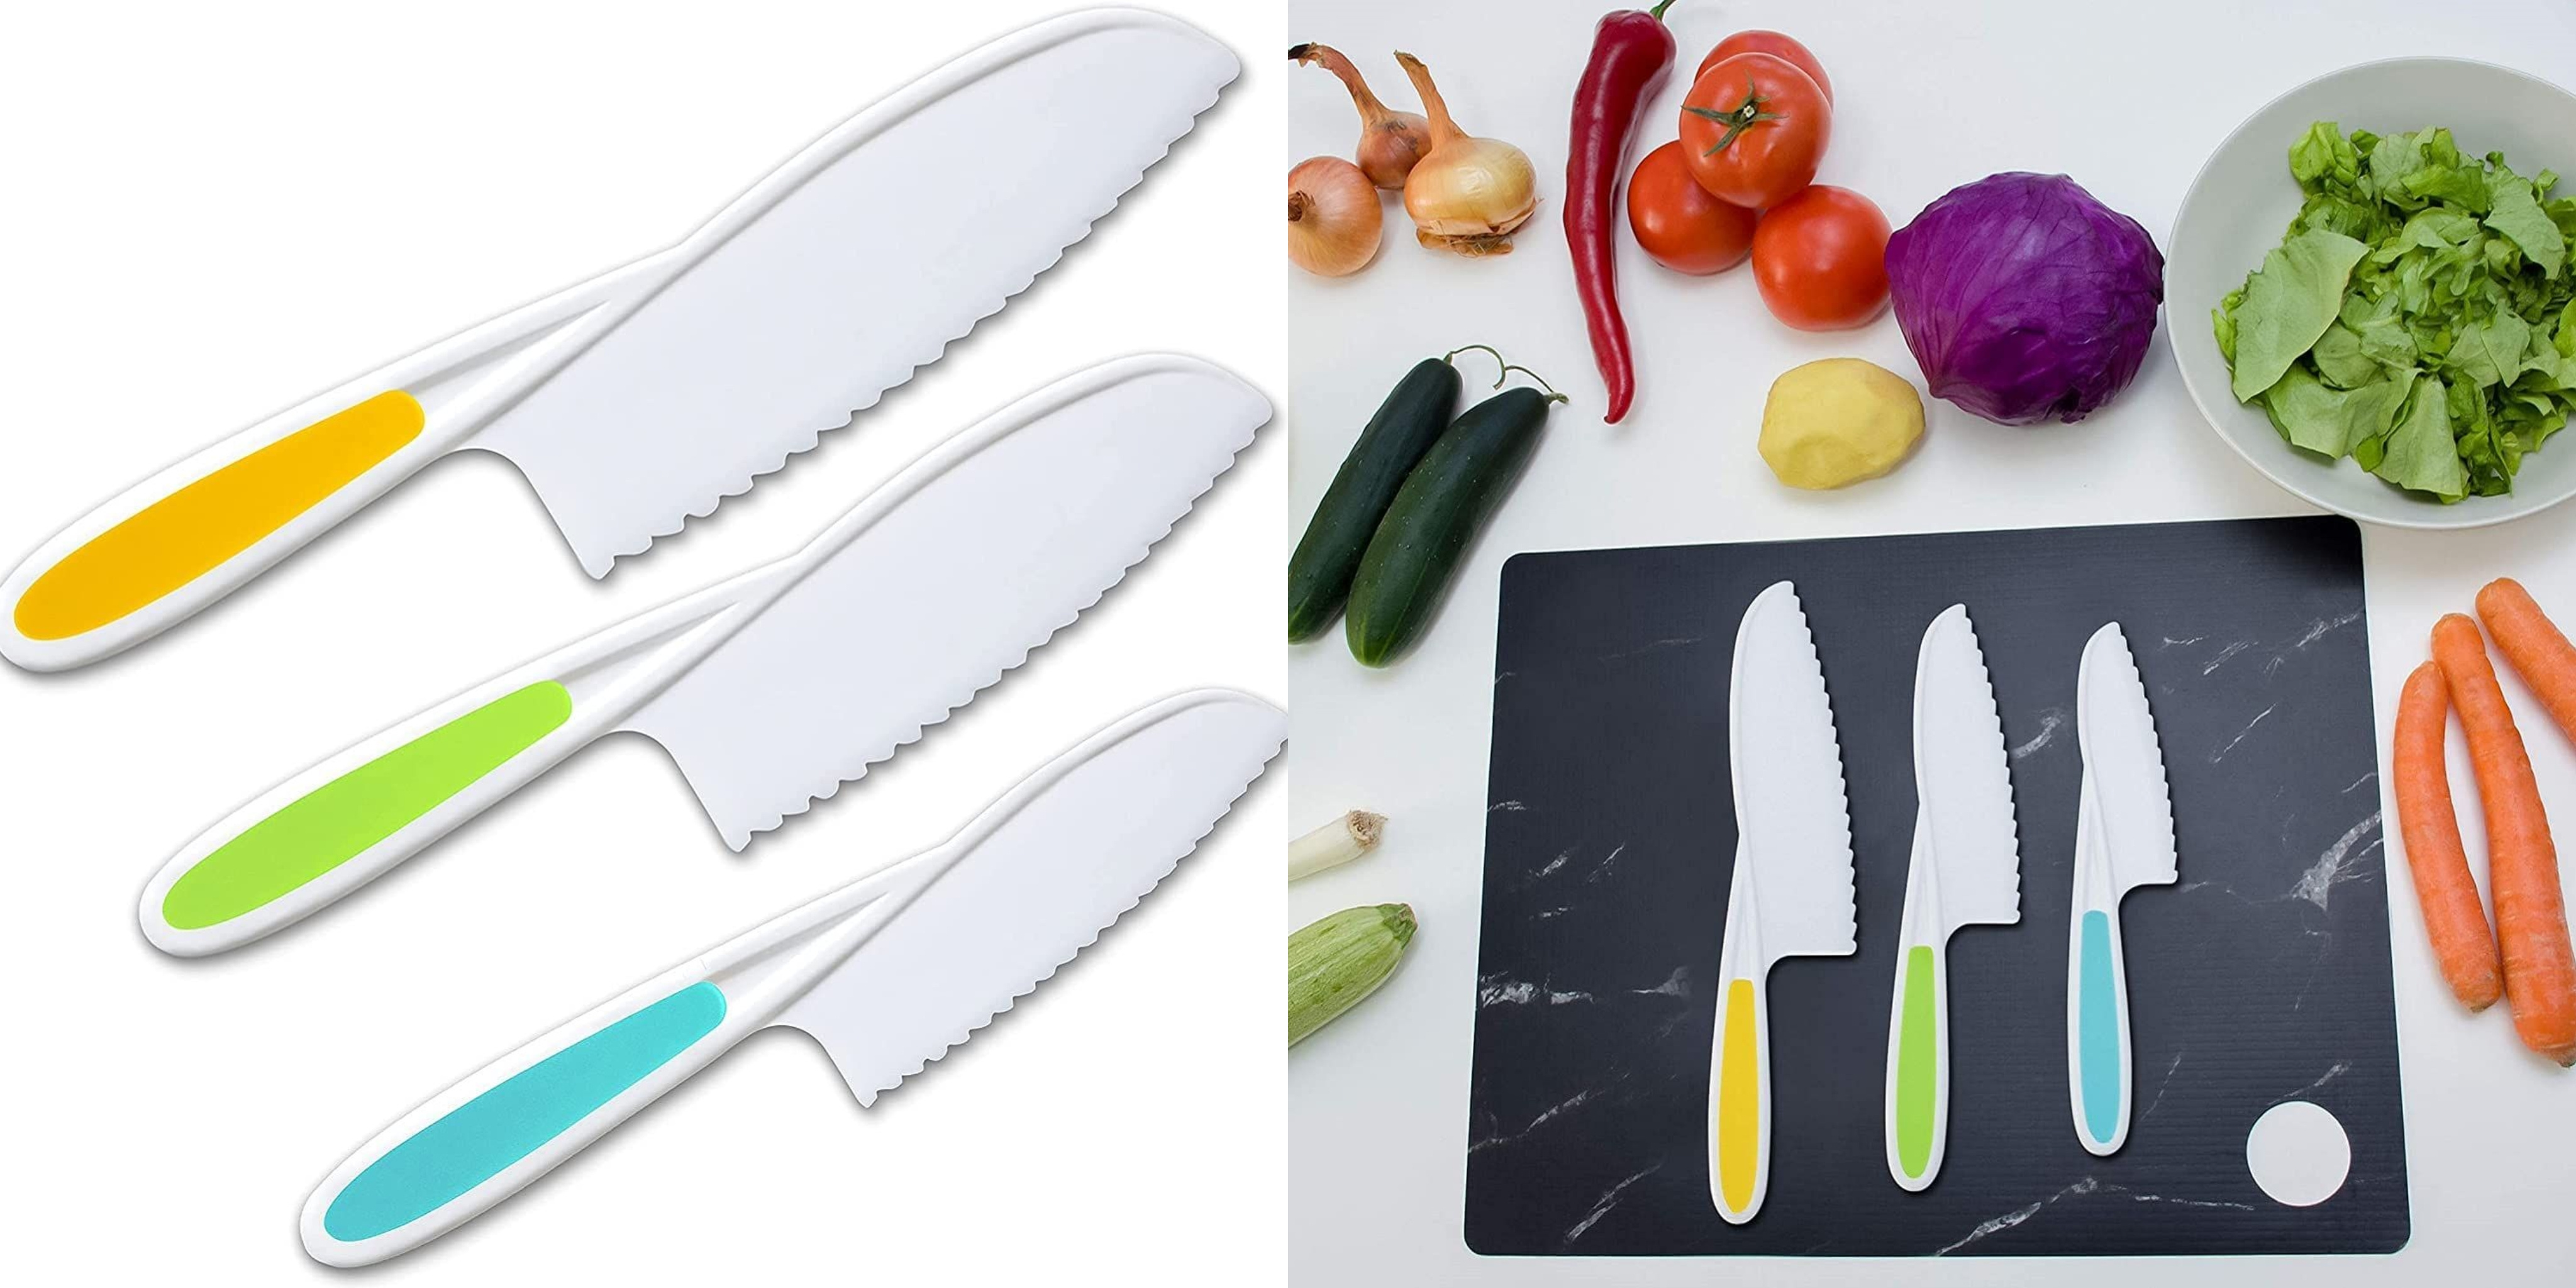  FACATH Juego de cuchillos para niños de 3 piezas para cocinar,  con tabla de cortar y cuchillos seguros de lechuga y ensalada, utensilios  de cocina para niños en 3 tamaños y